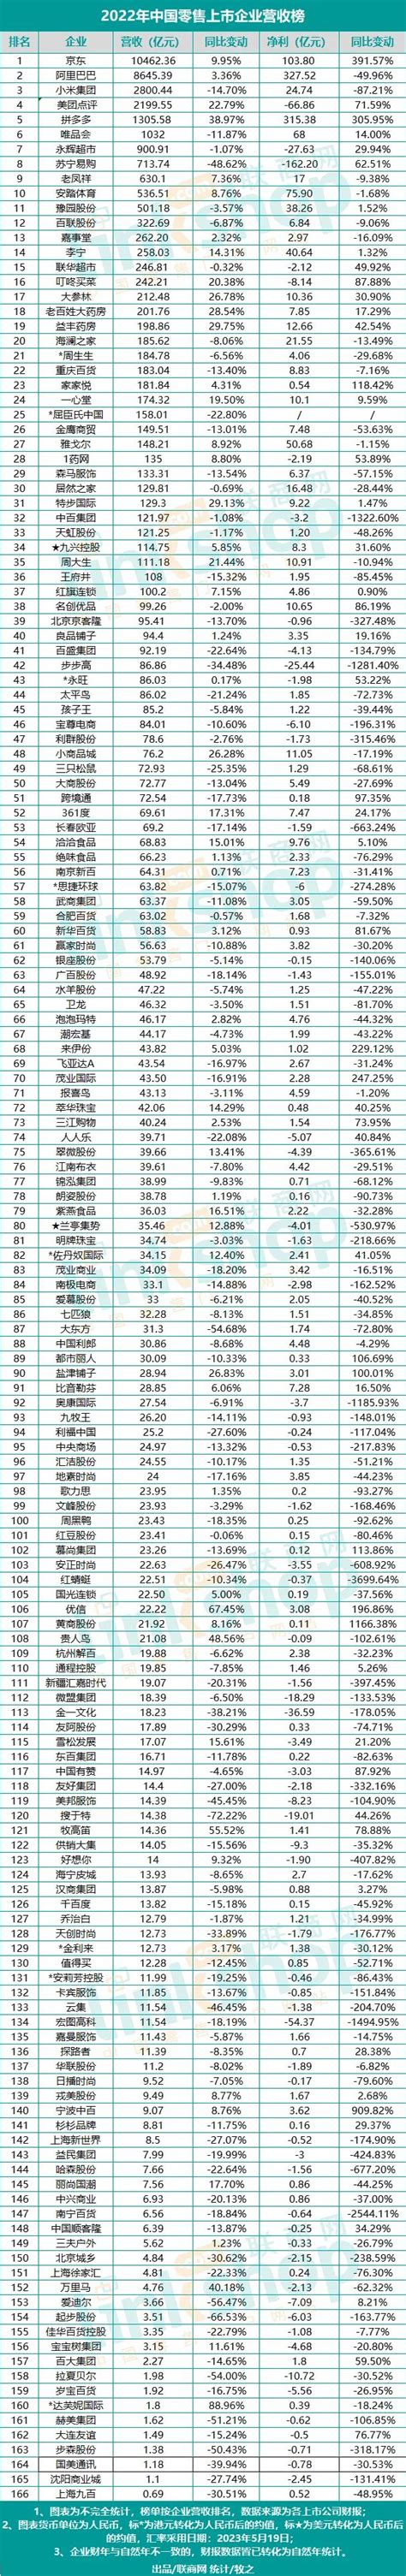 2021上半年中国零售上市企业营收排行榜｜联商数据_联商网